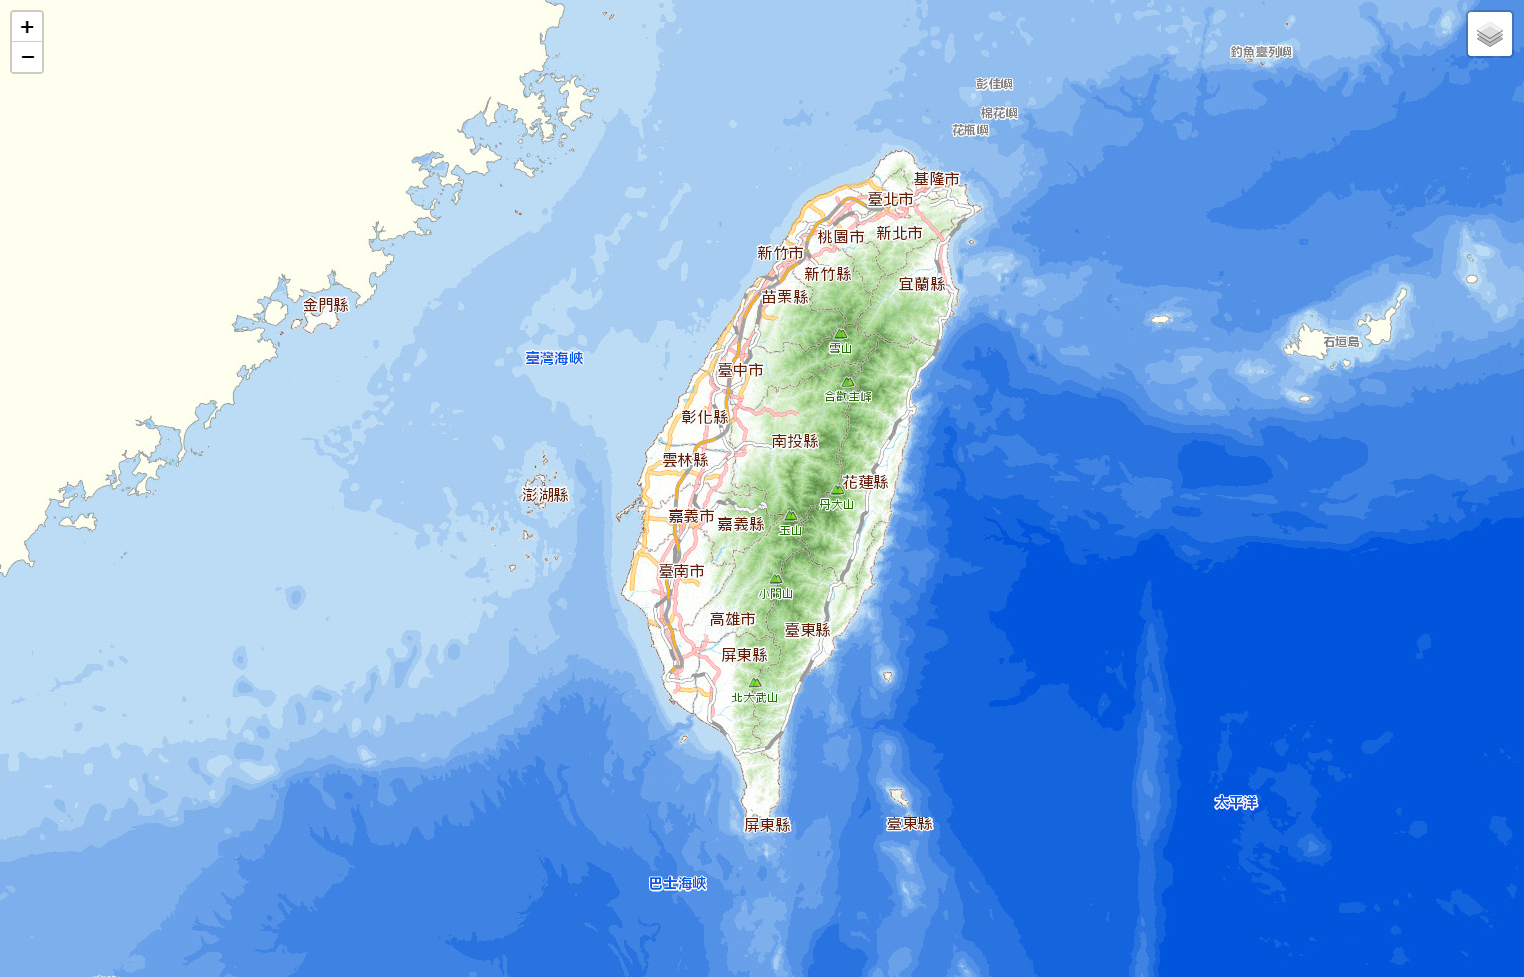 臺灣通用電子地圖 圖資